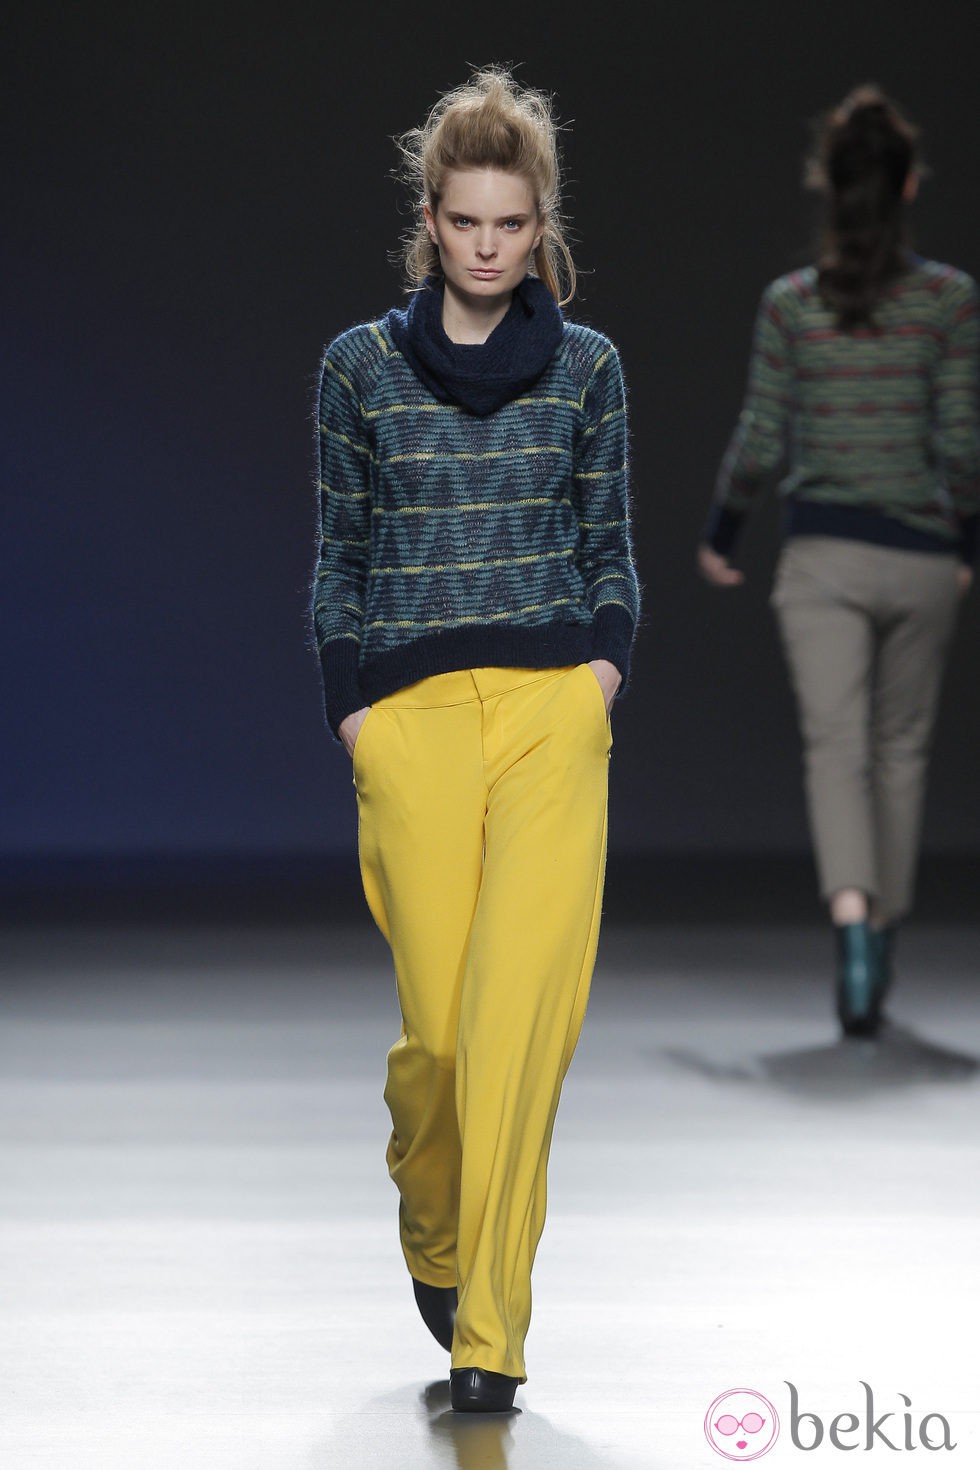 Pantalones amarillos de la colección otoño/invierno 2013/2014 de Sara Coleman en Madrid Fashion Week